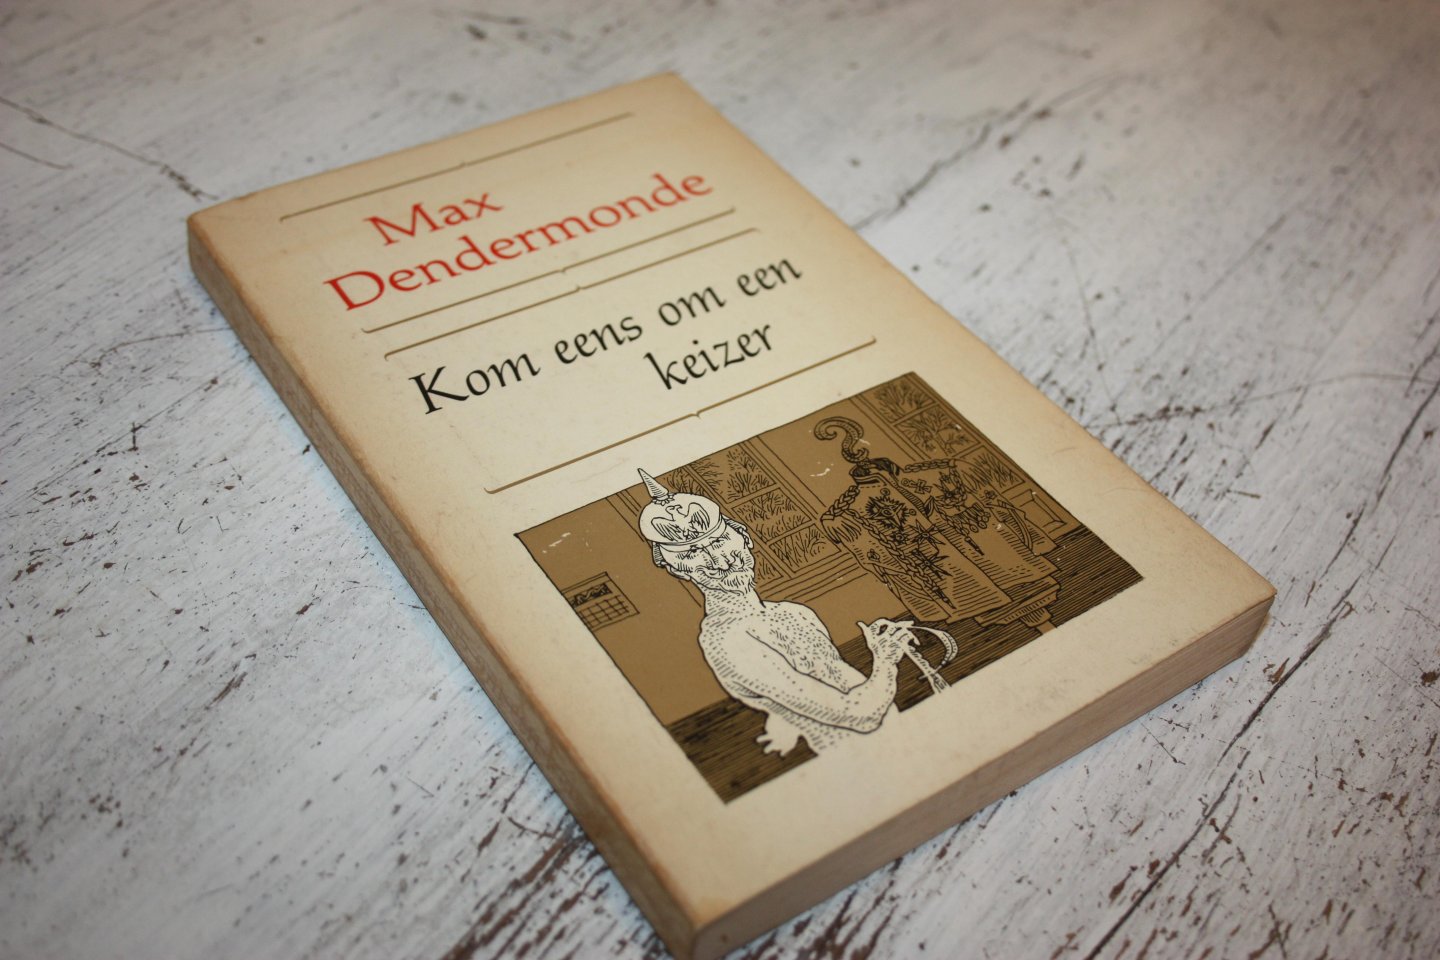 Dendermonde, Max - Boekenweek 1968, KOM EENS OM EEN KEIZER